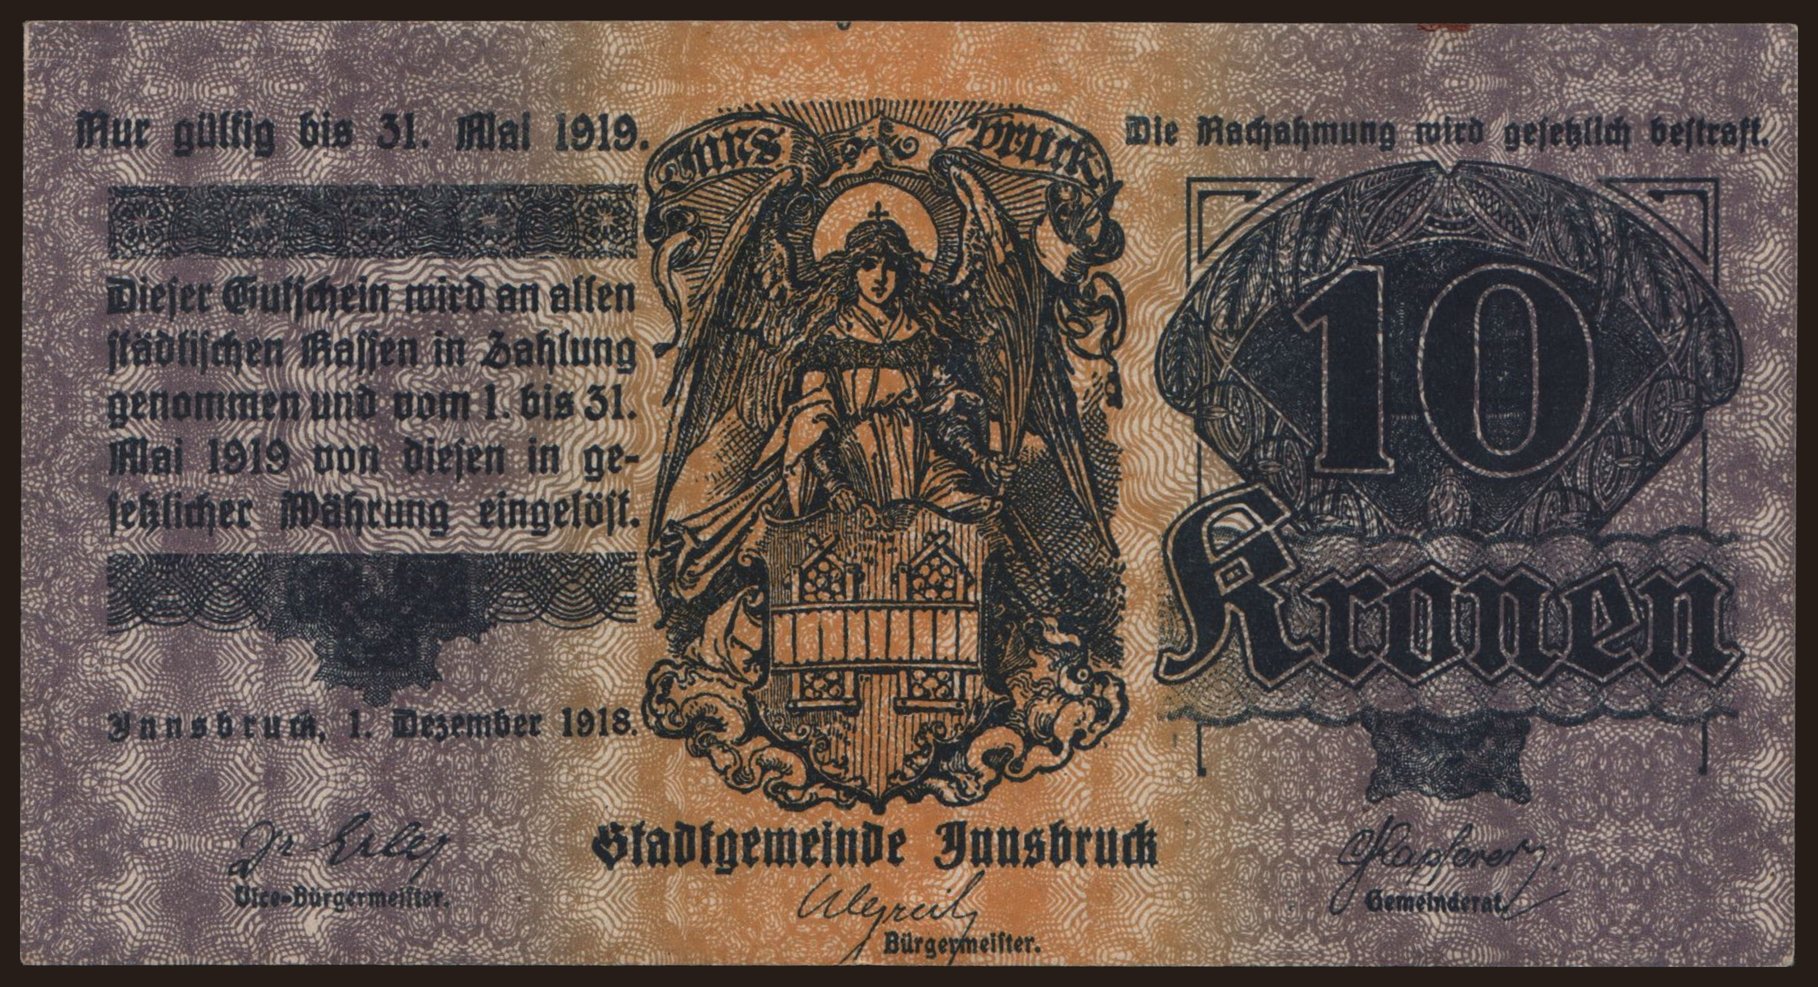 Innsbruck, 10 Kronen, 1918